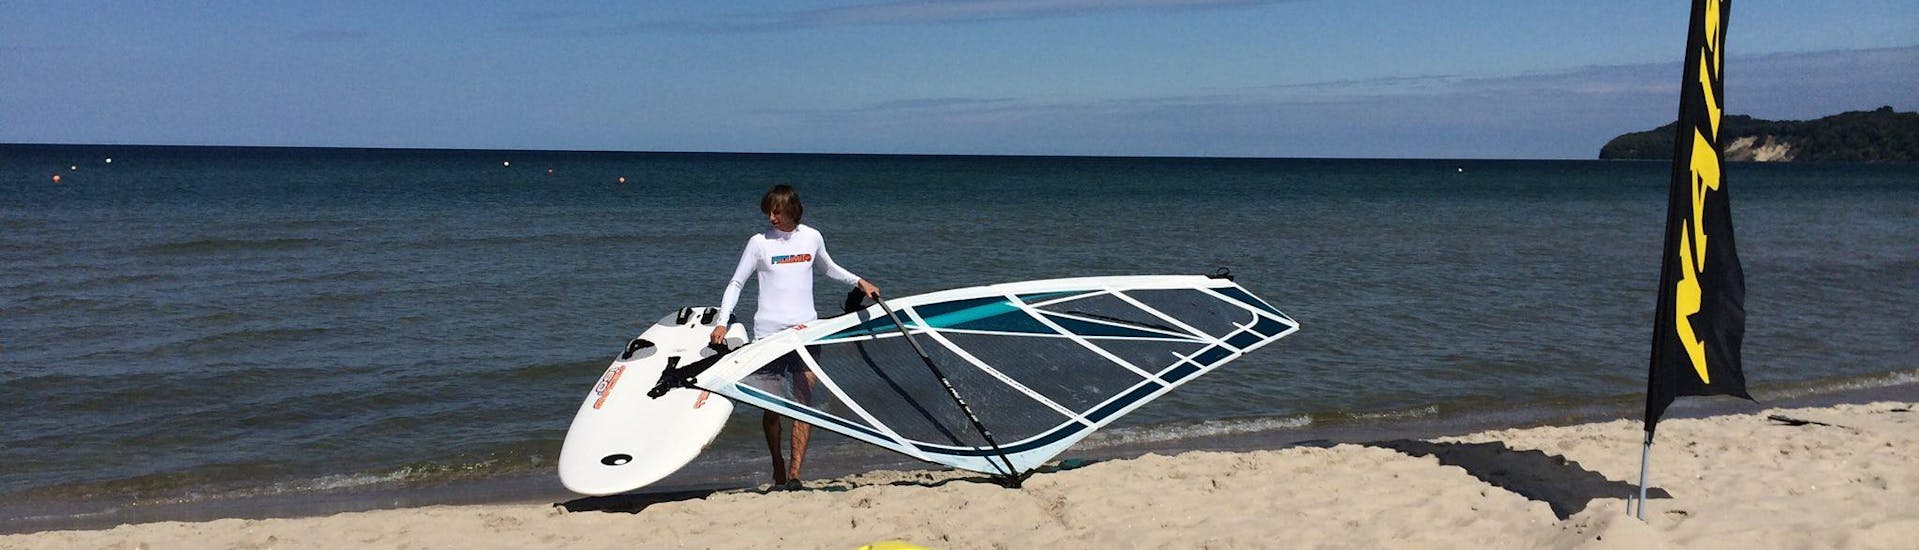 Cours de windsurf à Binz (dès 7 ans).